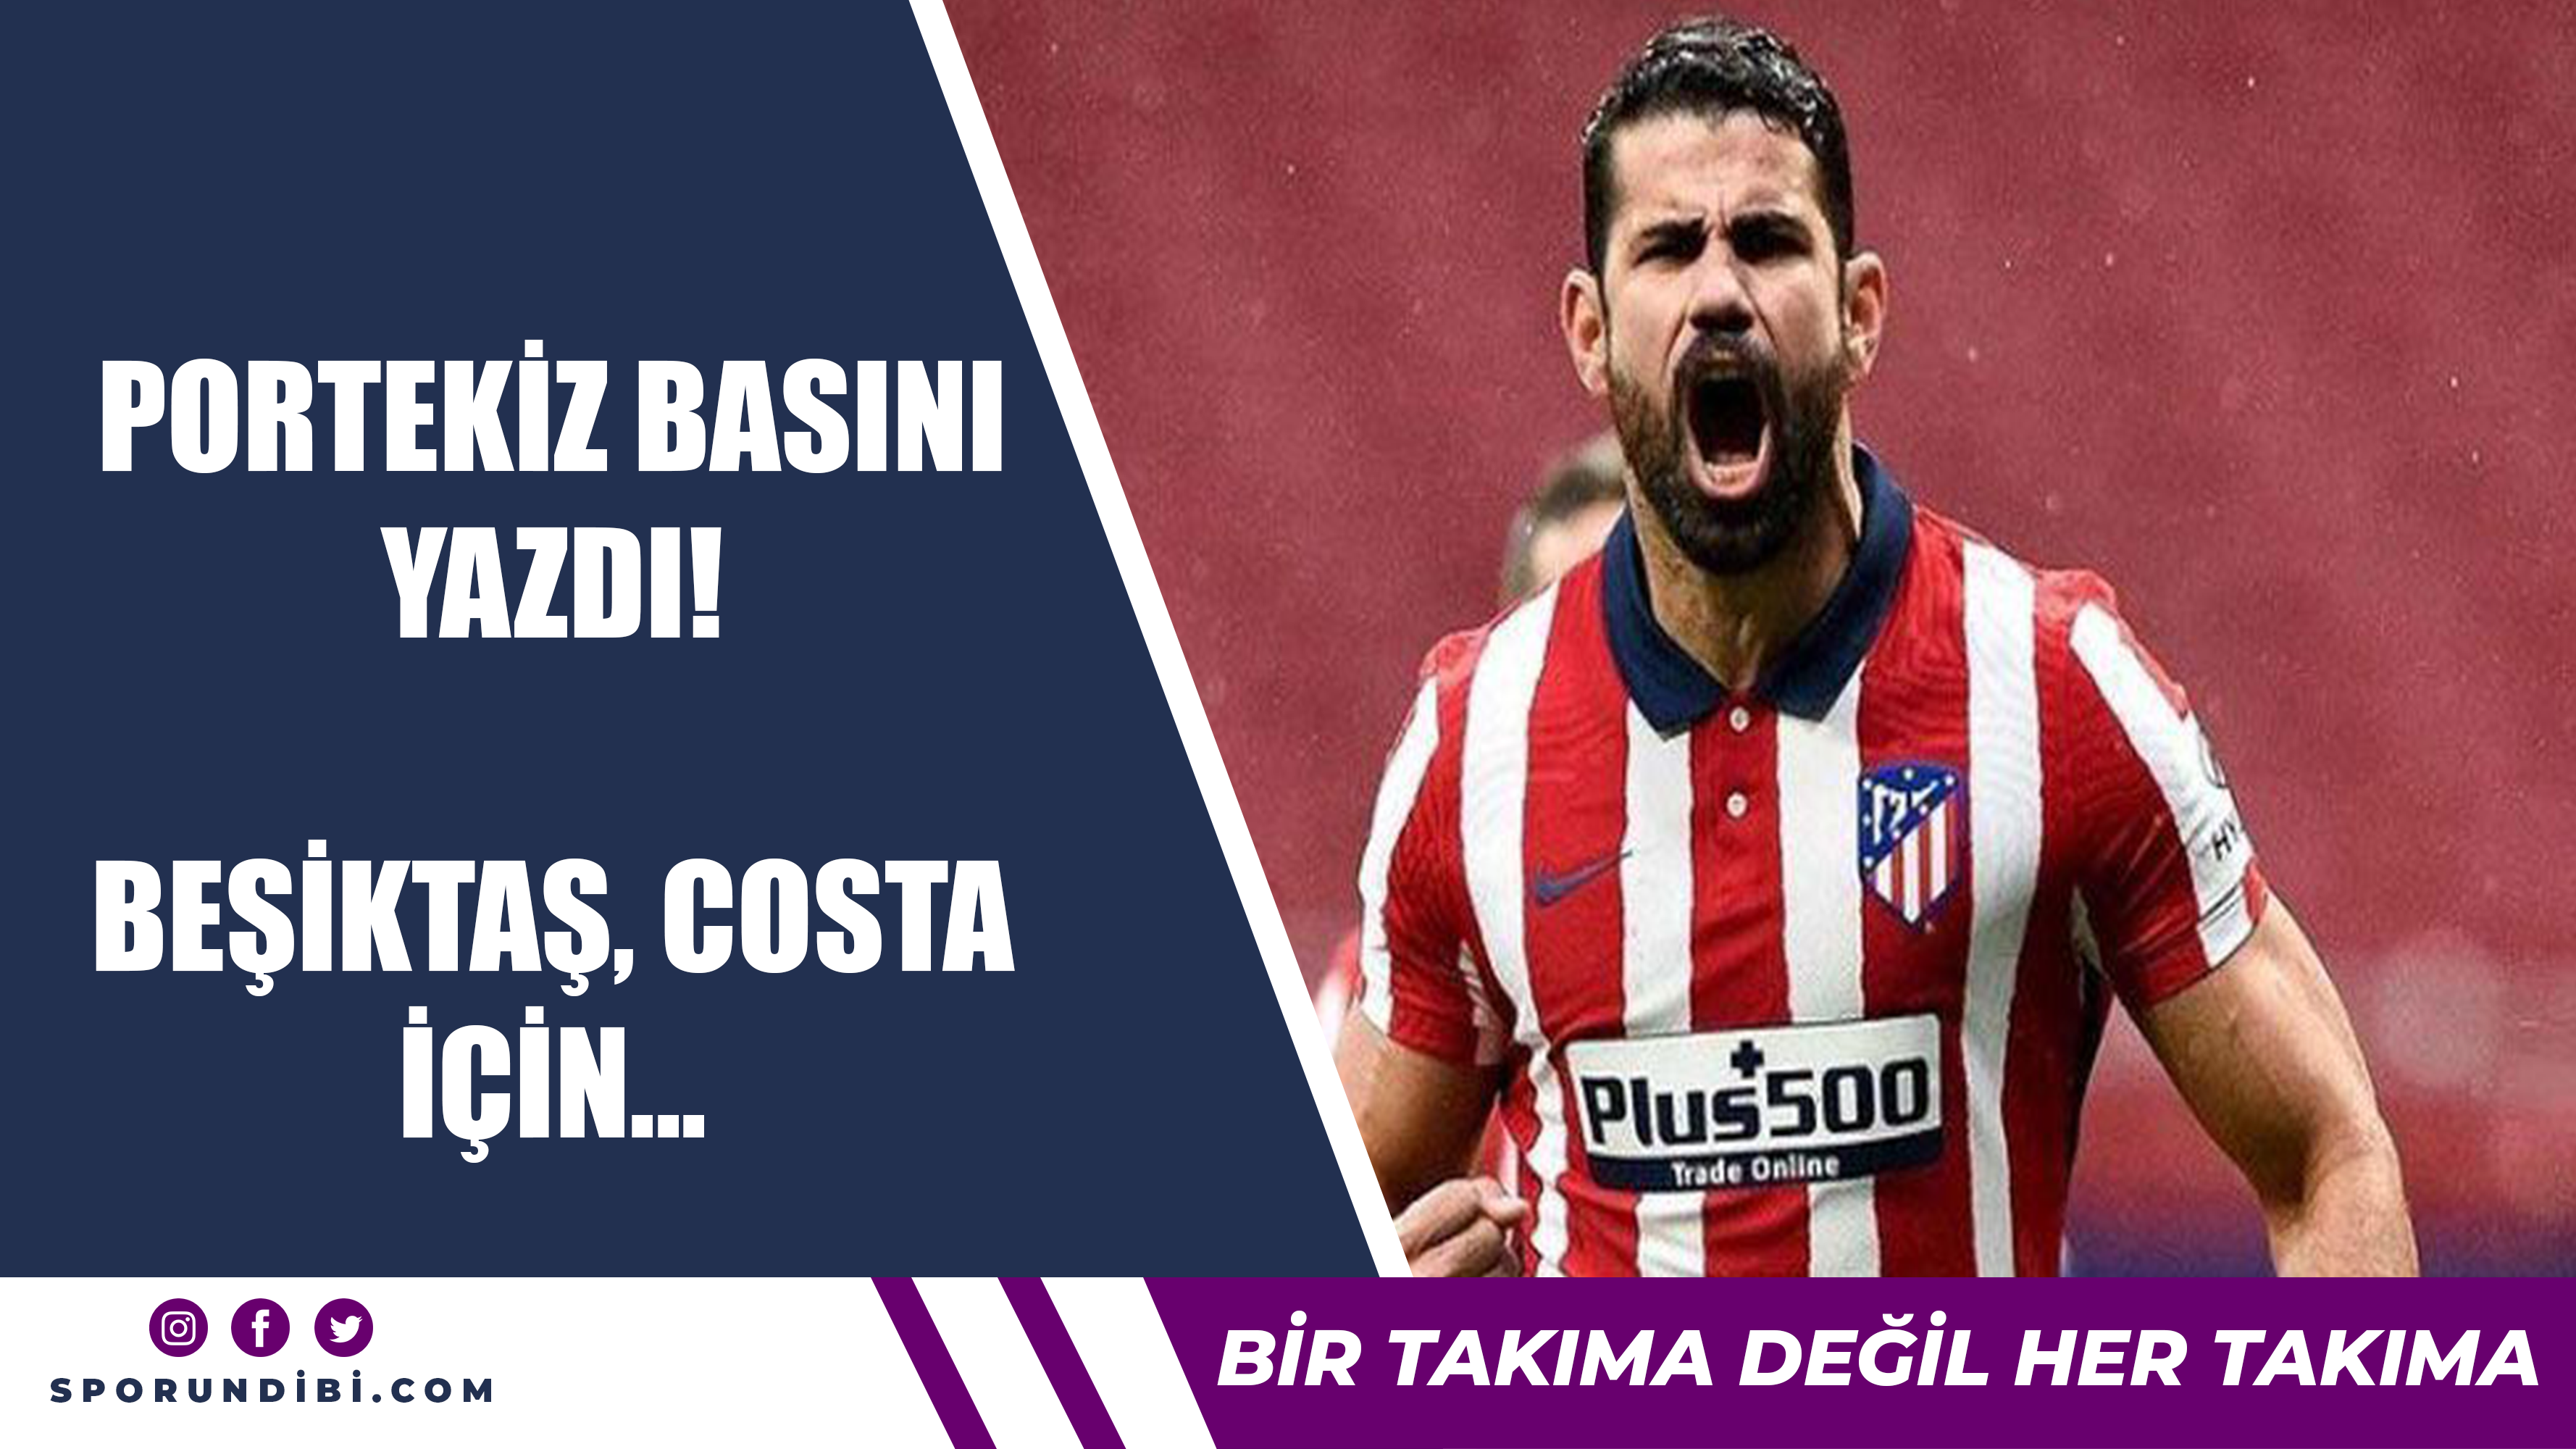 Portekiz basını yazdı! Beşiktaş, Costa için...